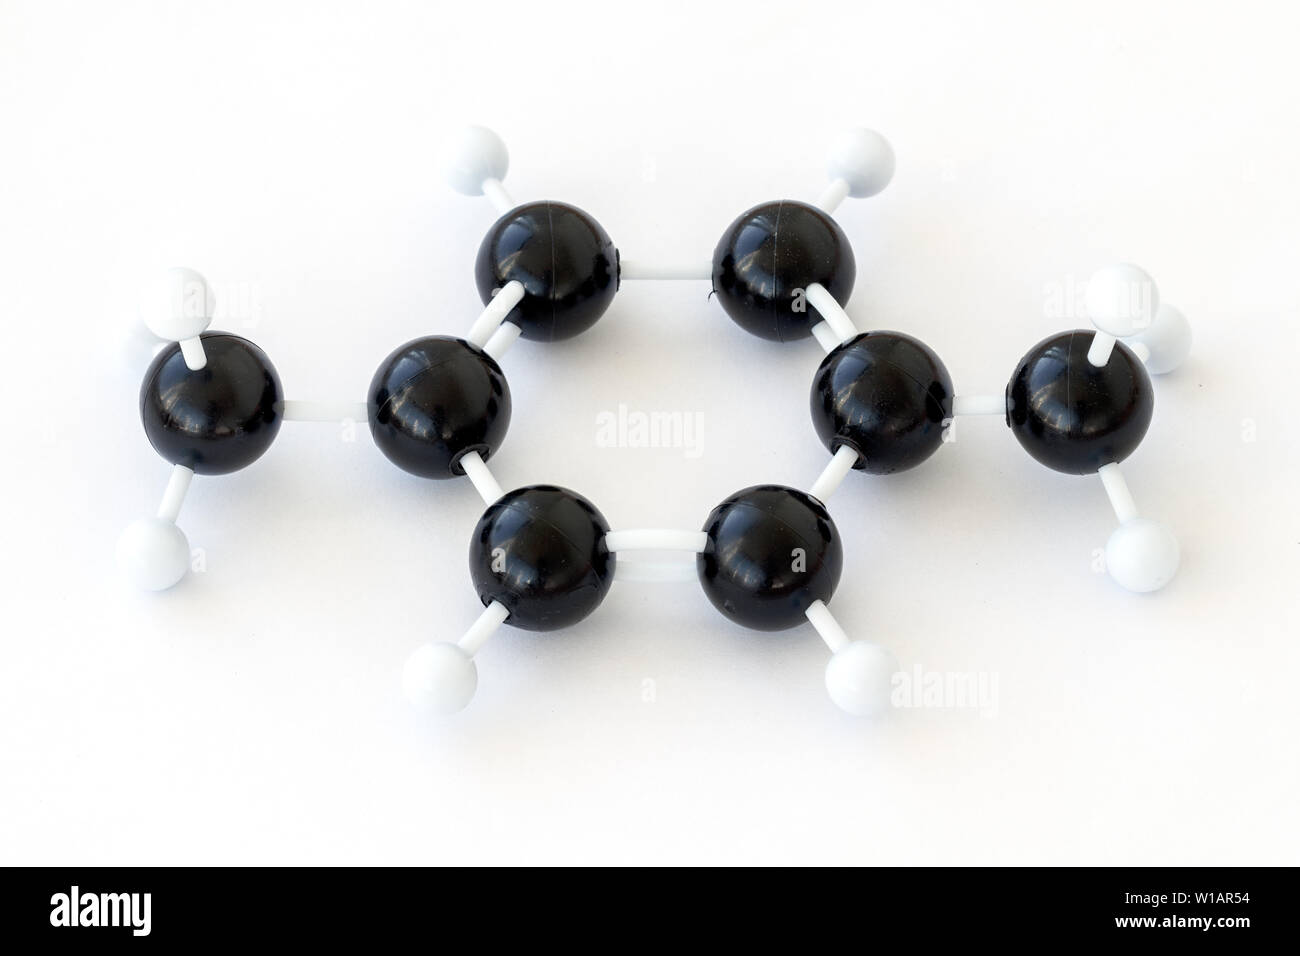 Balle en plastique et le bâton, d'un modèle 1,4 diméthylbenzène ou para-xylène molécule (CH3)2C6H4, l'un des g) Xylène, illustré avec kekule structure. Banque D'Images